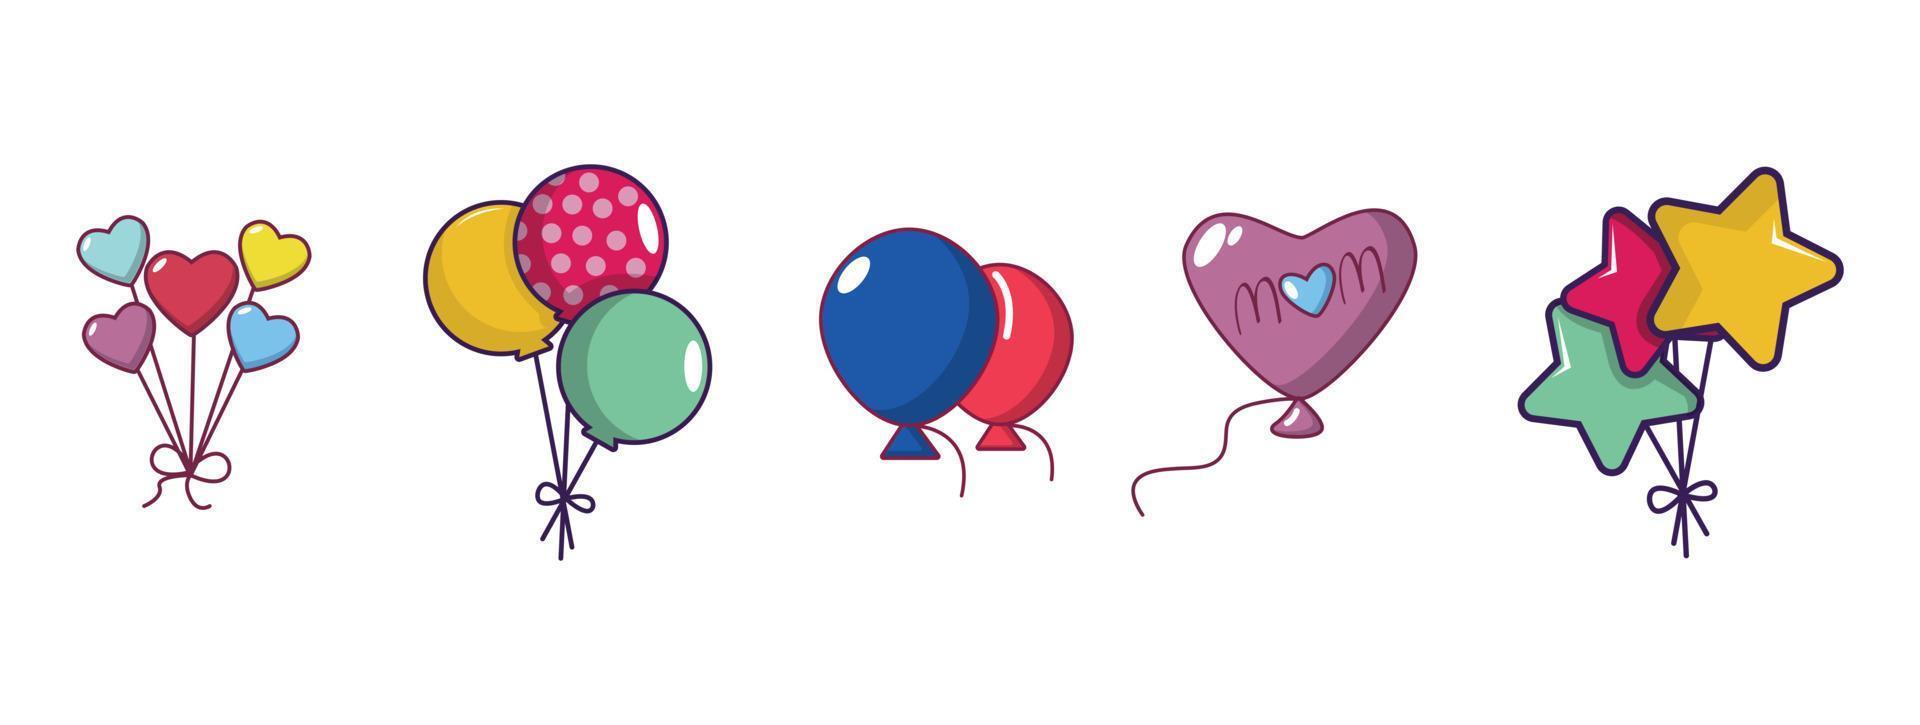 conjunto de iconos de globos, estilo de dibujos animados vector